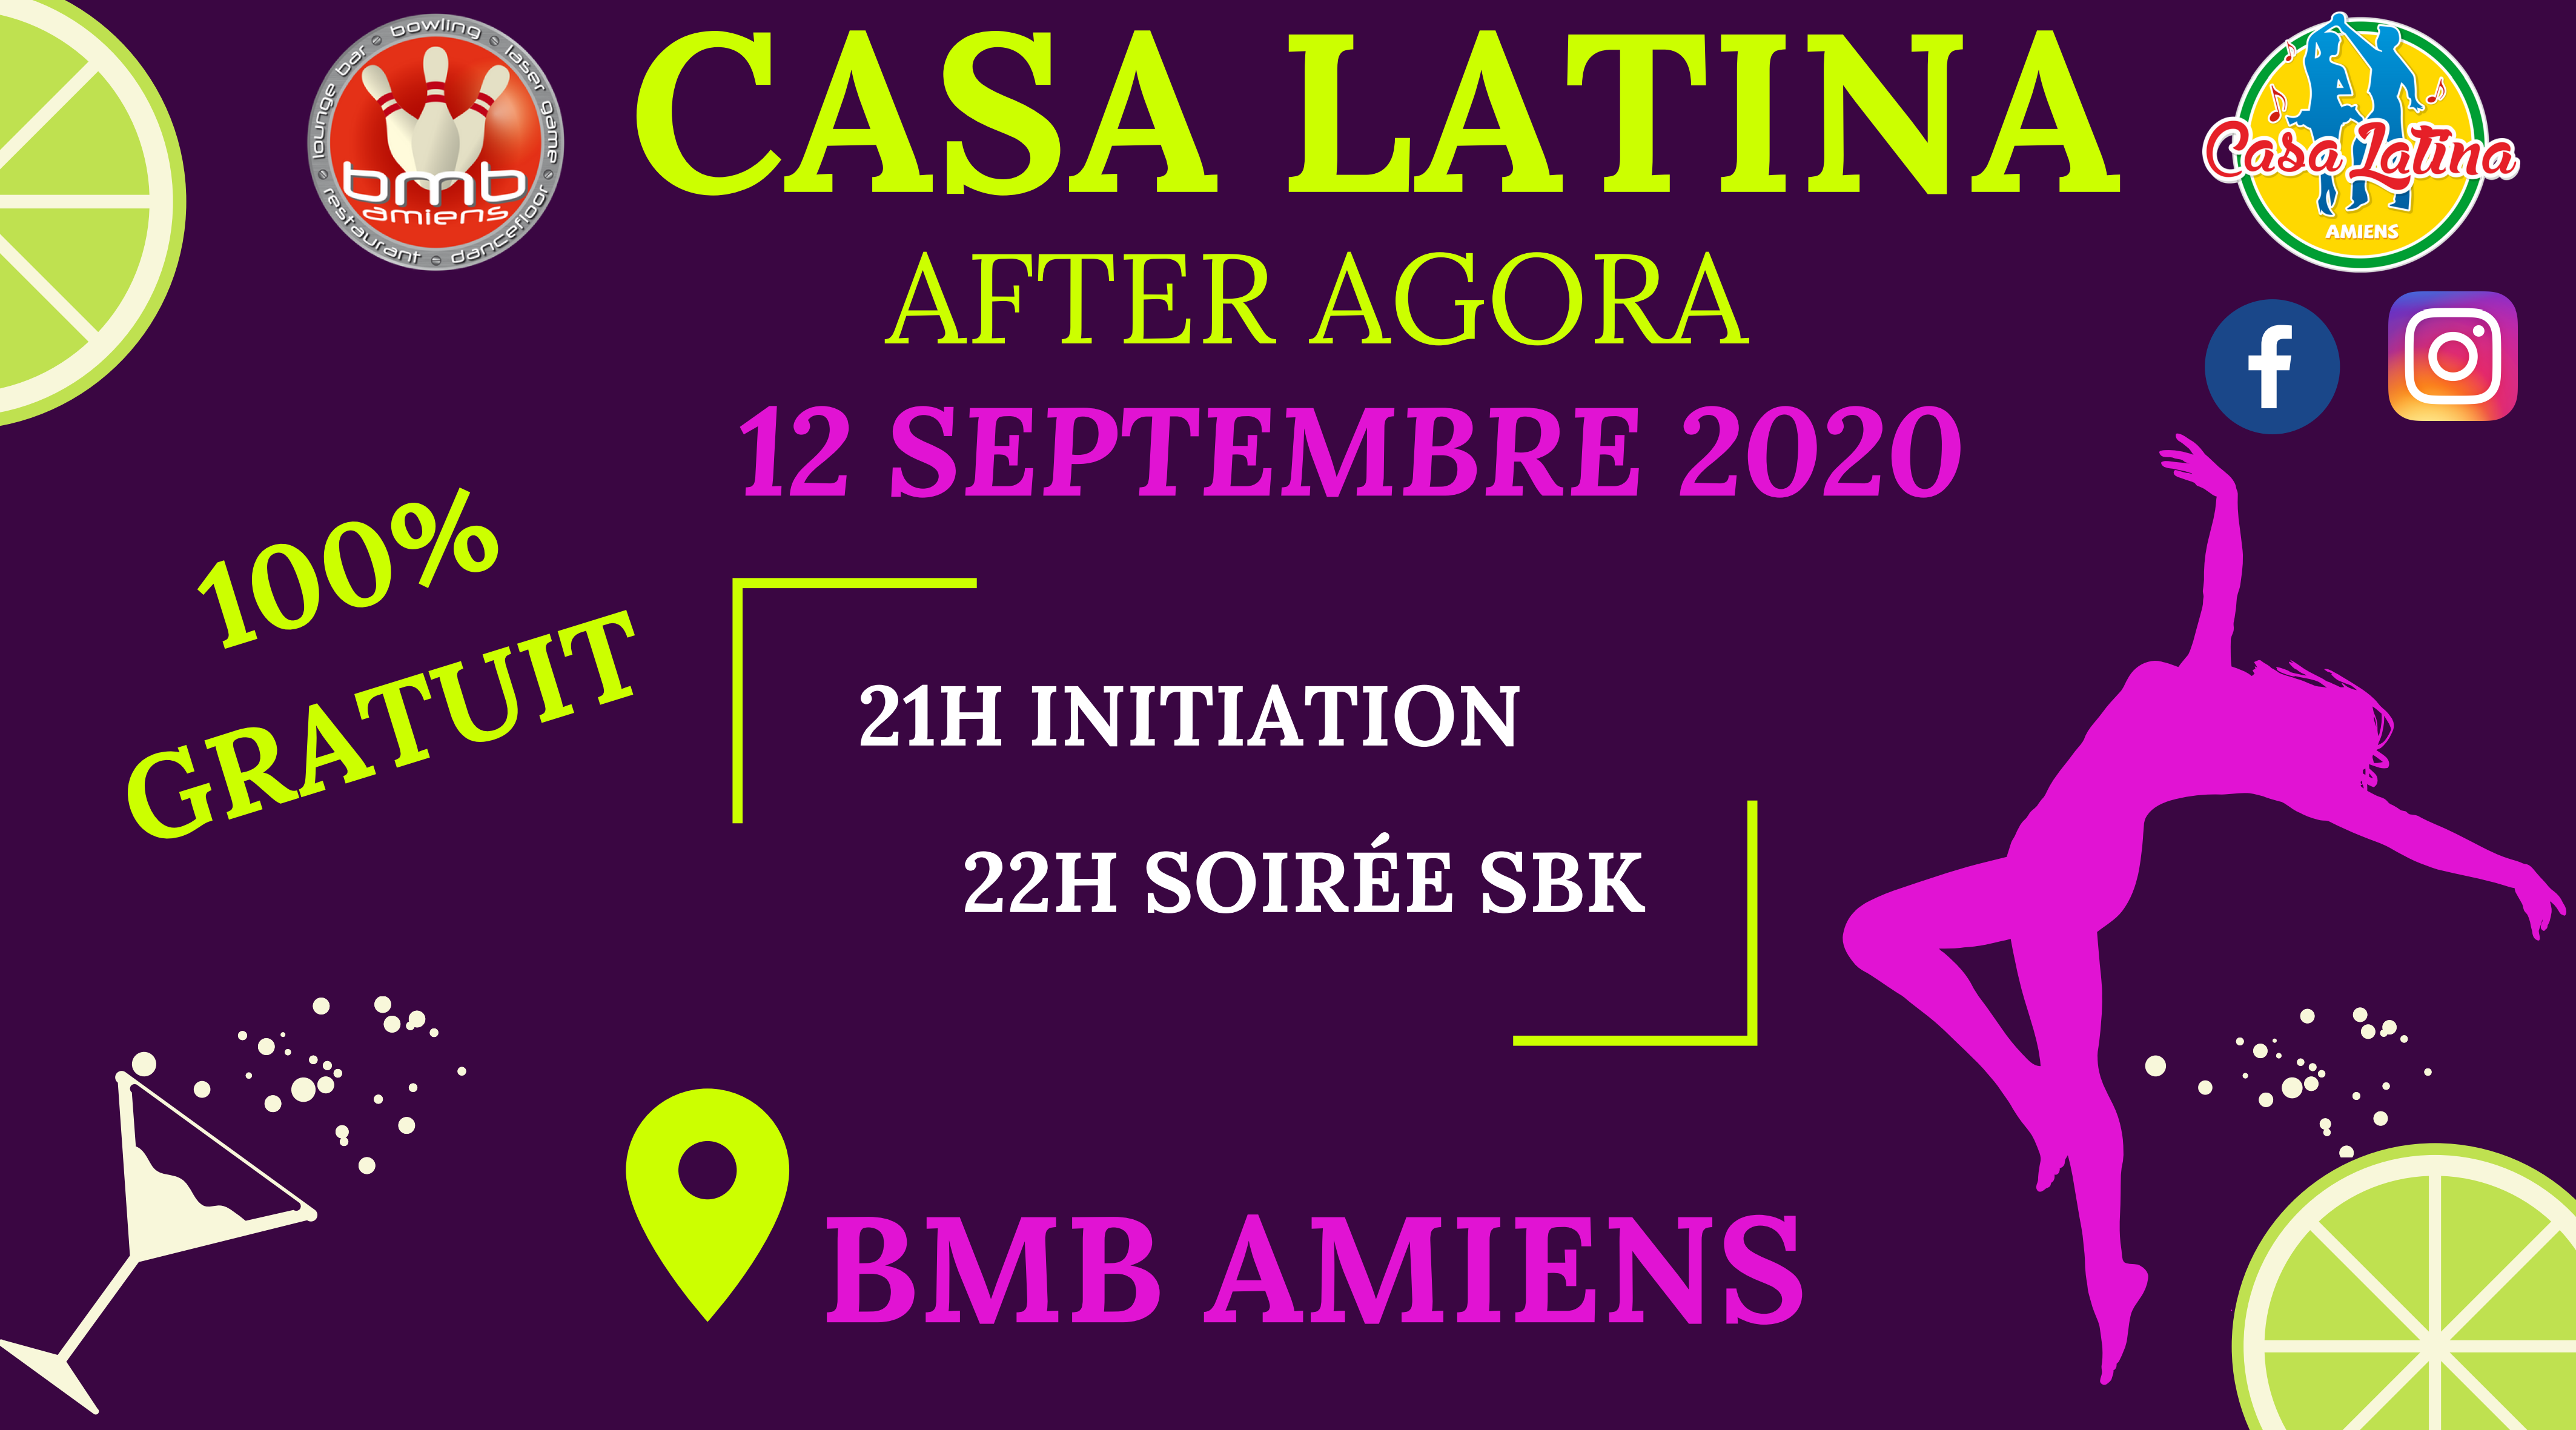 After AGORA – Casa Latina